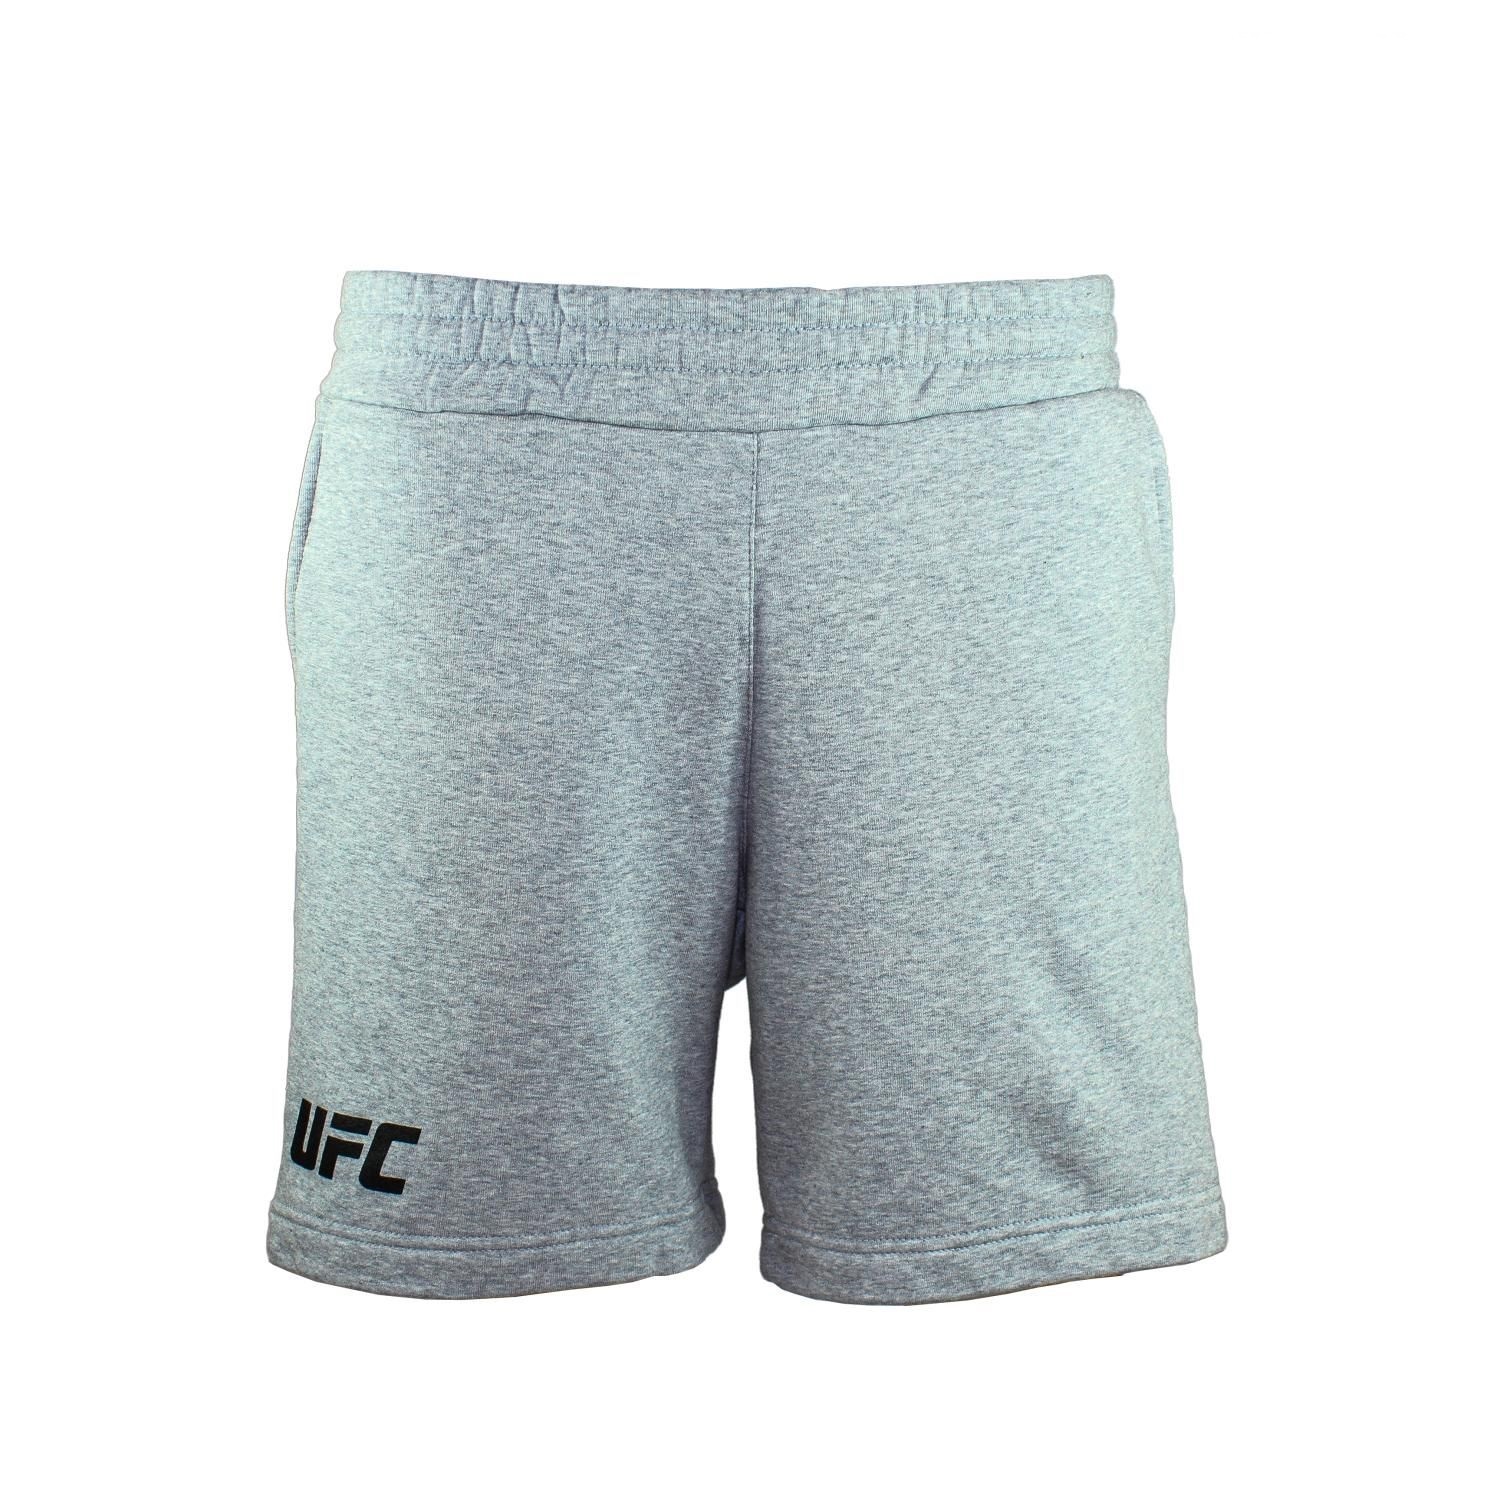 Спортивные шорты мужские UFC UFC SHORTS LOGO серые M